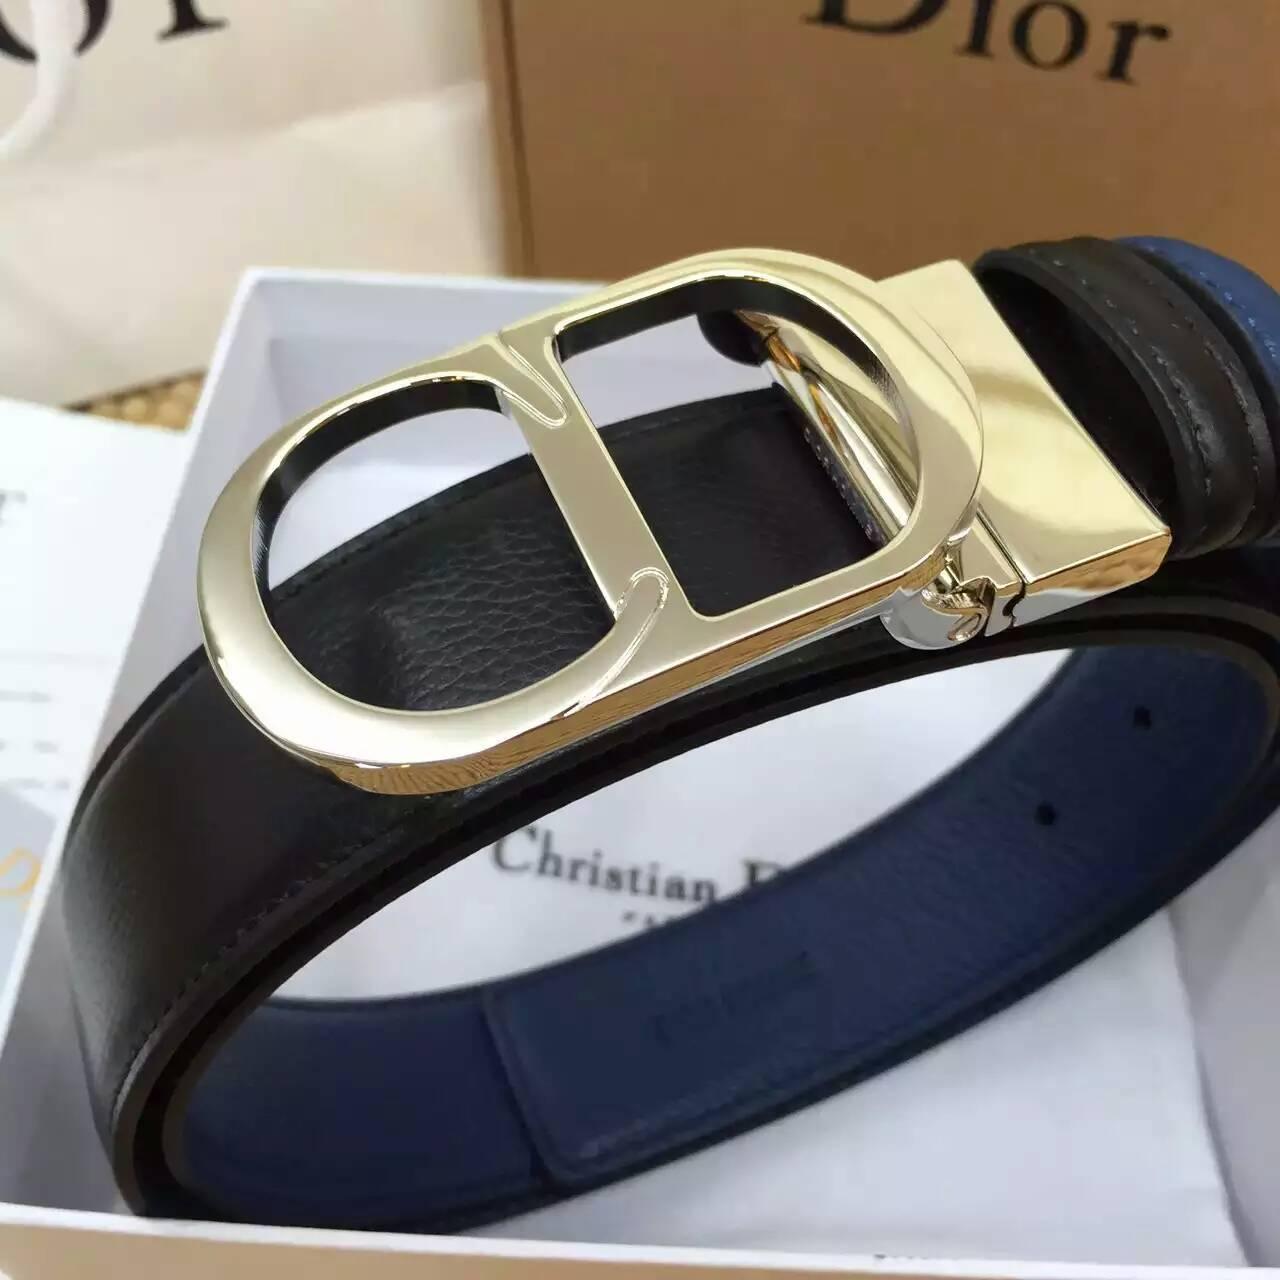 ディオールコピー ベルト Christian Dior 2016春夏新作 高品質 メンズ ベルト diorbelt160320-7